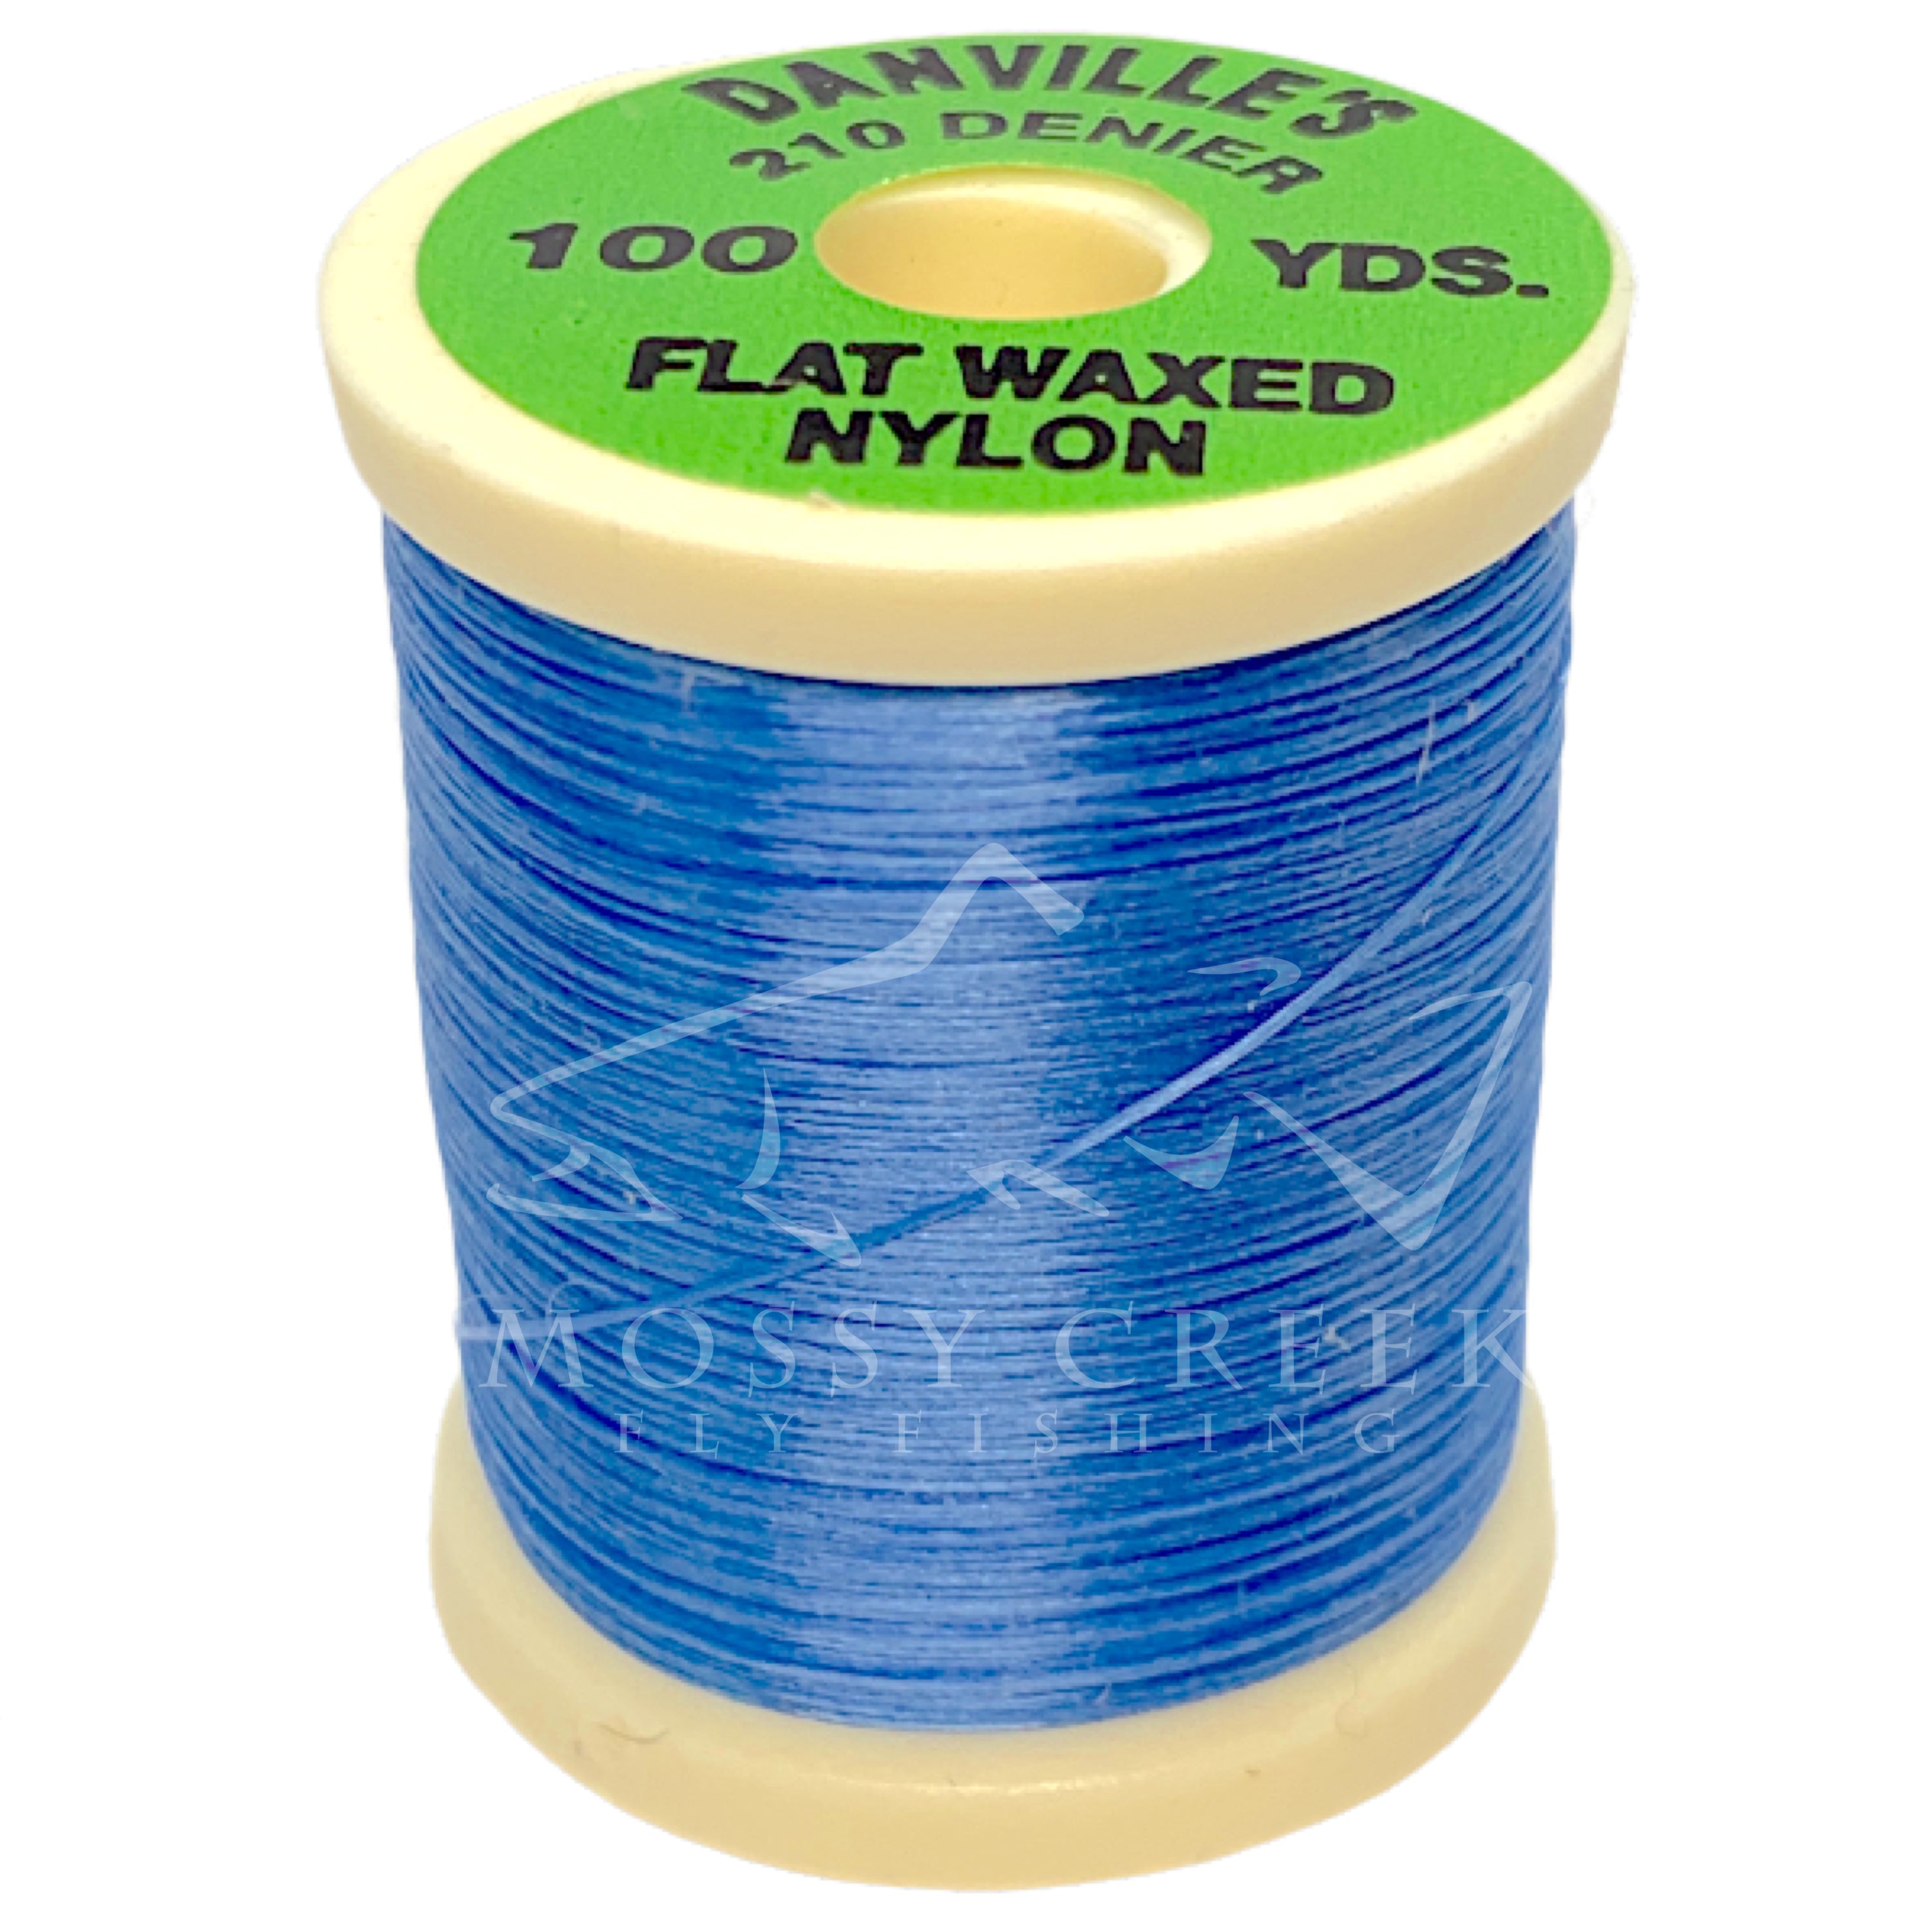 Flat Waxed Nylon Thread at The Fly Shop